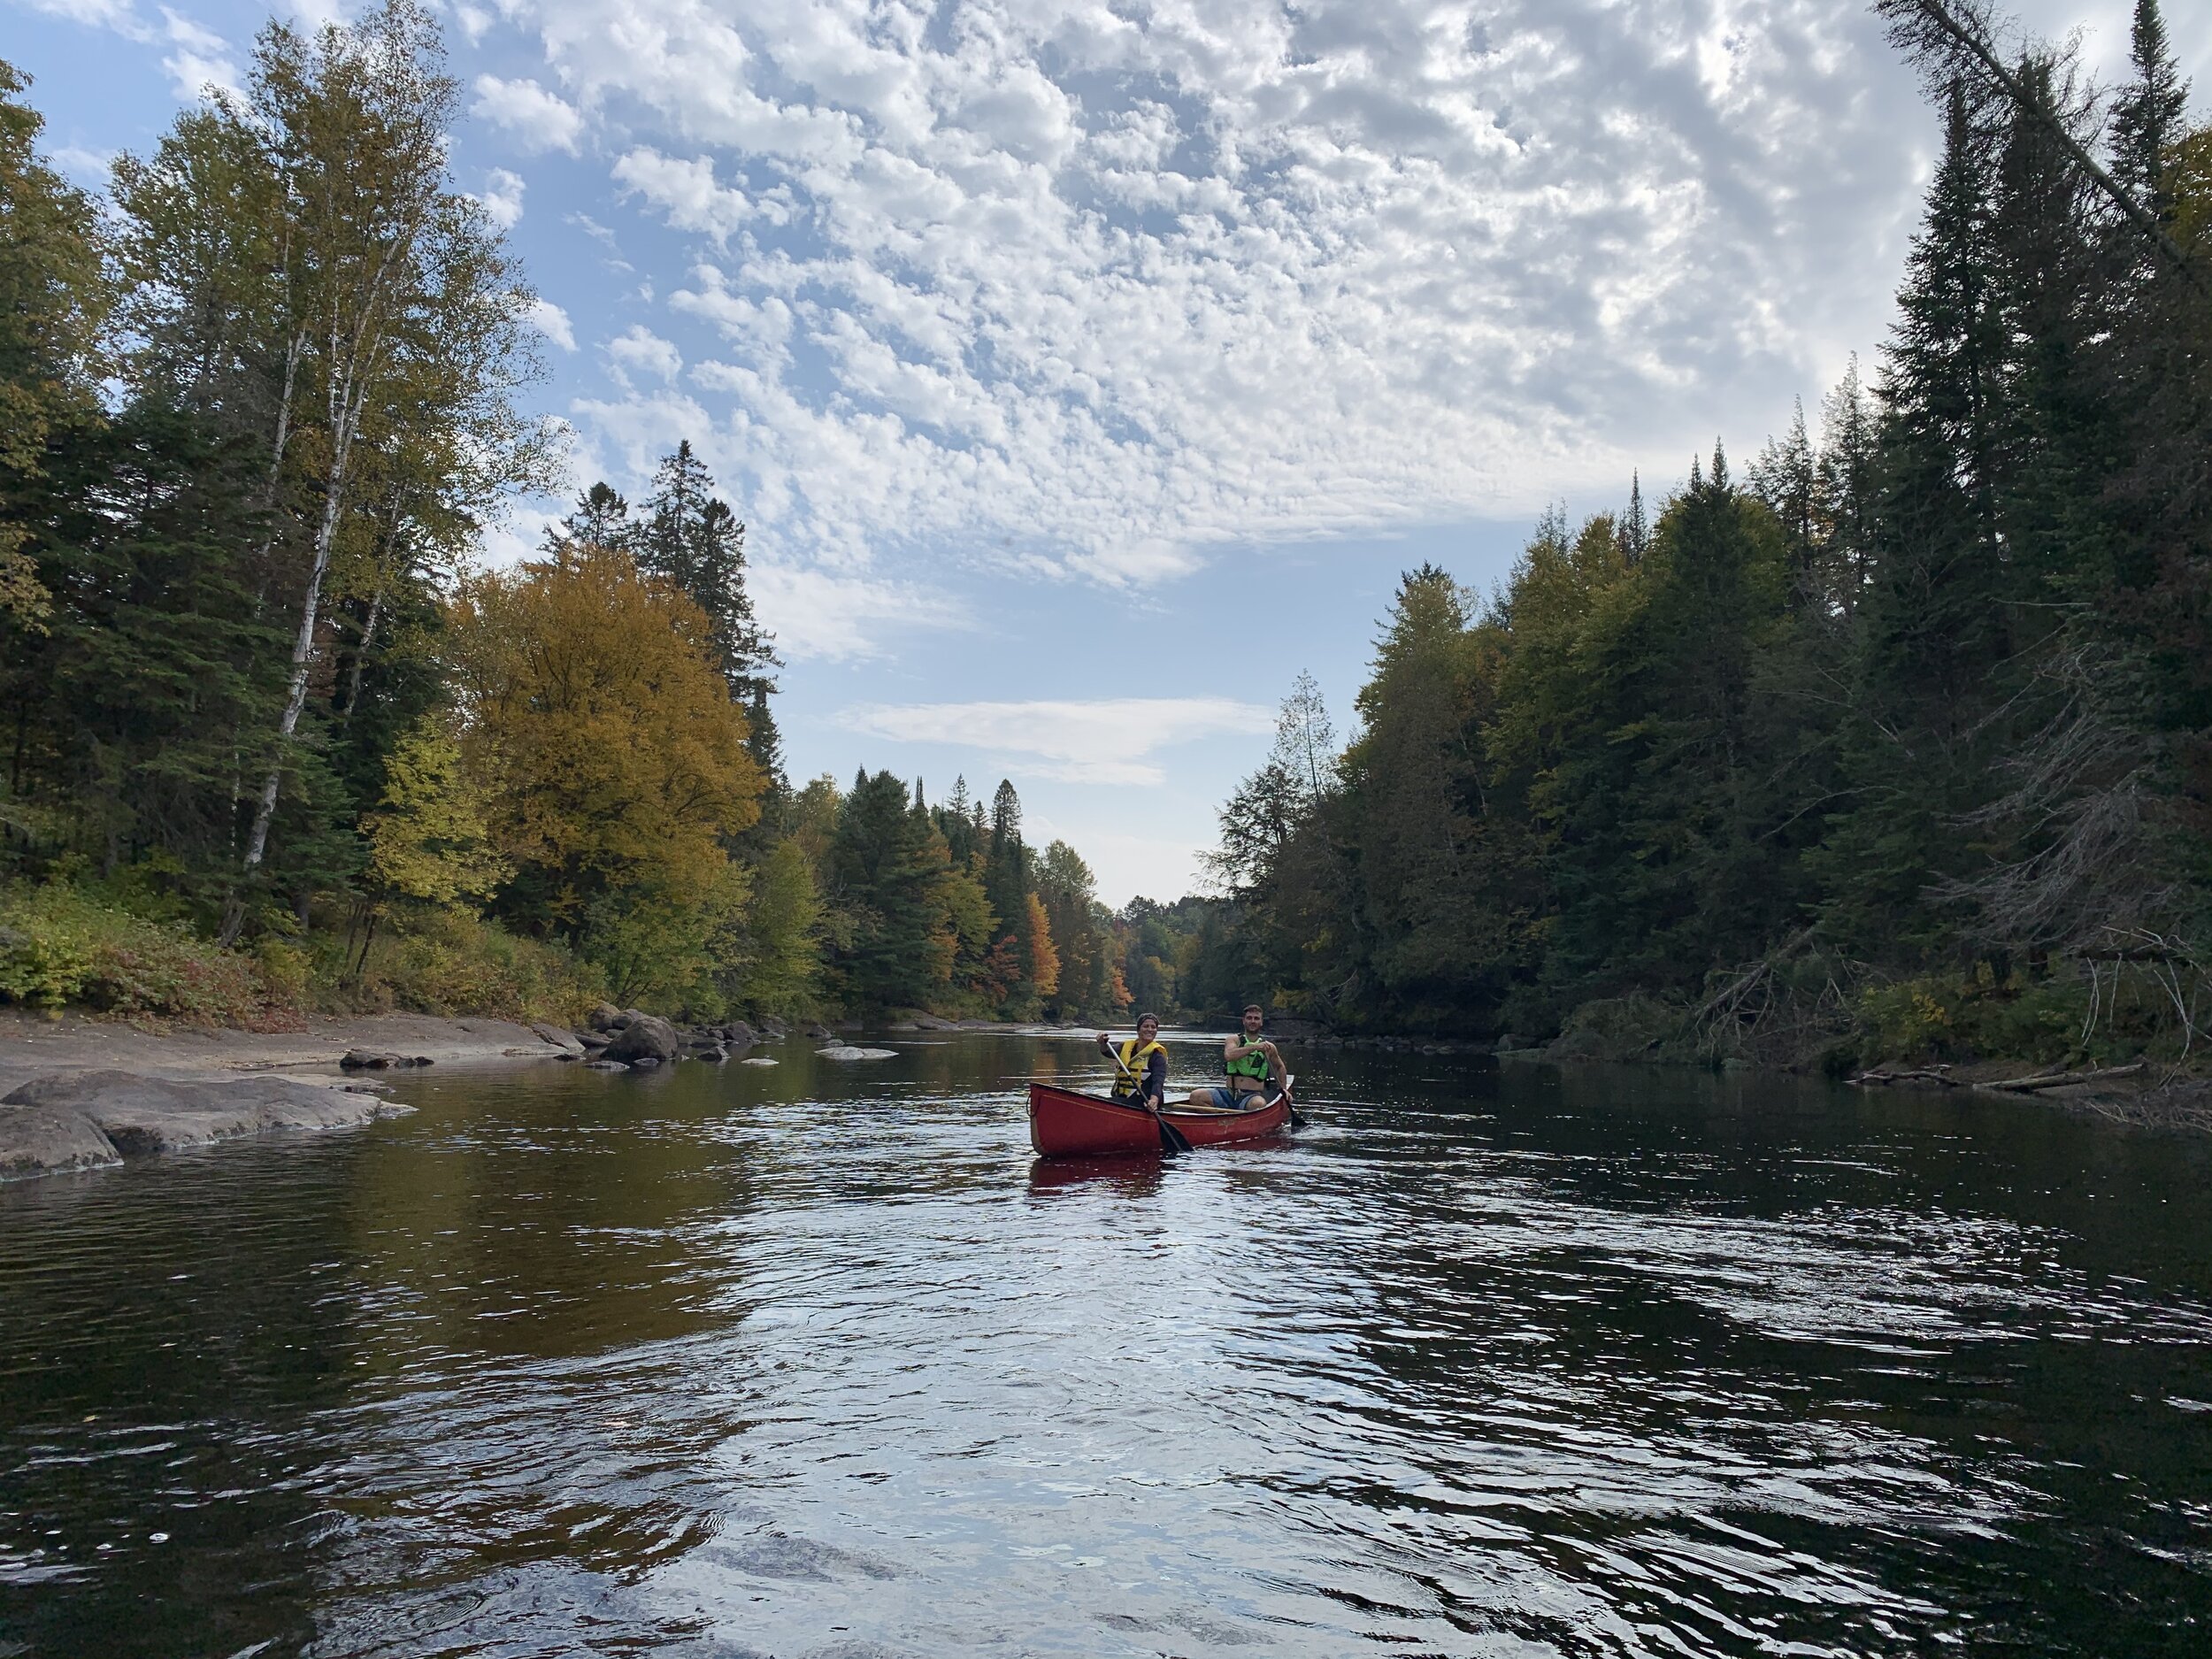 Canoe day trips